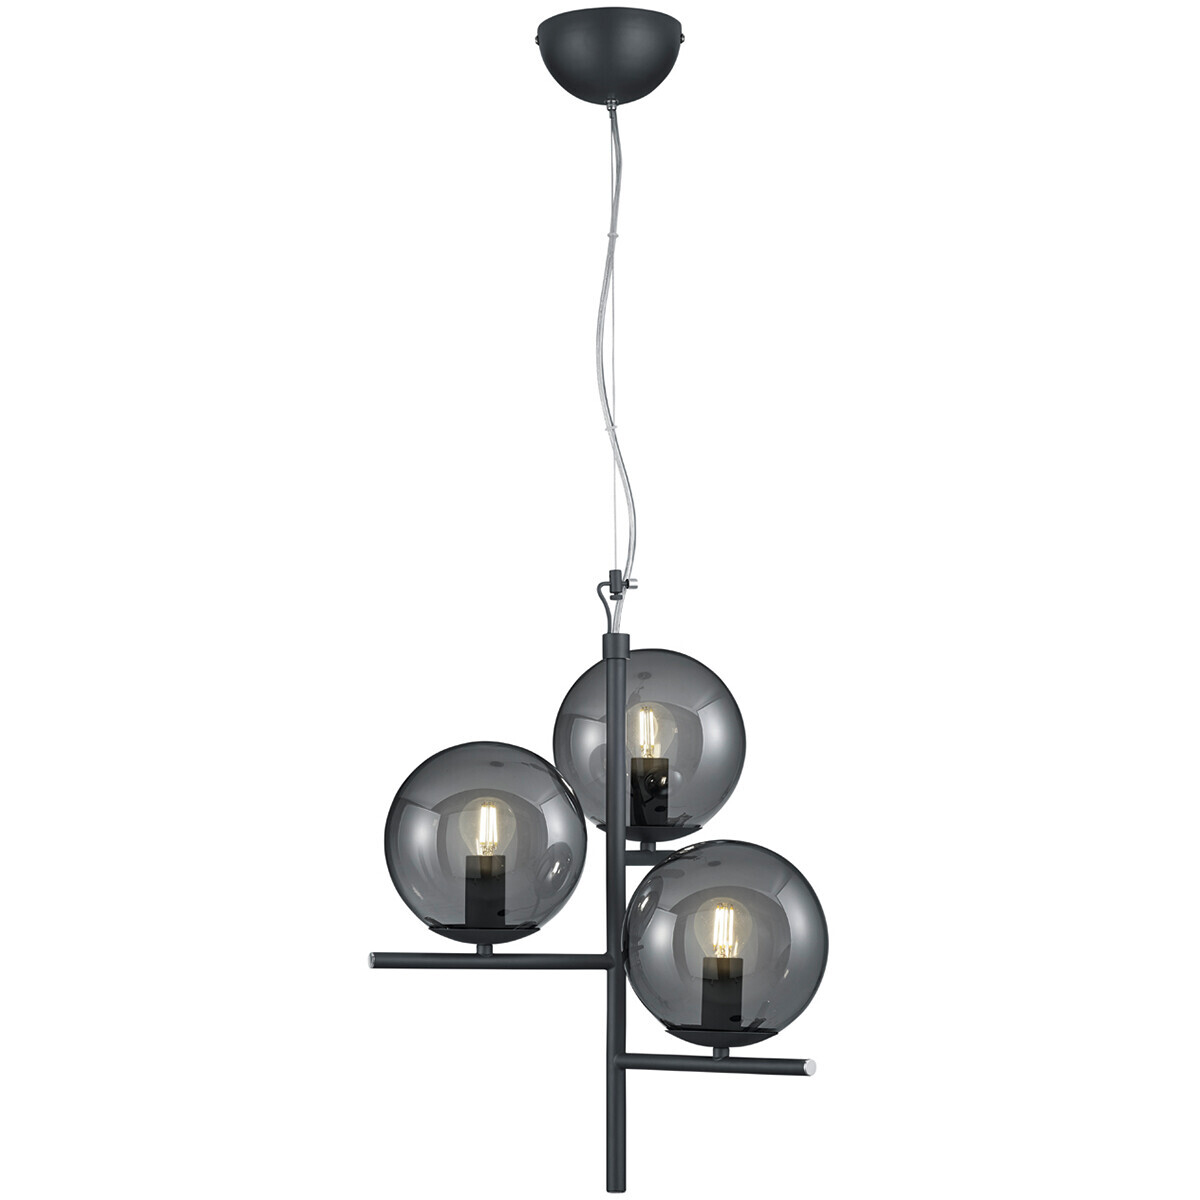 BES LED LED Hanglamp - Hangverlichting - Trion Pora - E14 Fitting - Rond - Mat Zwart - Aluminium